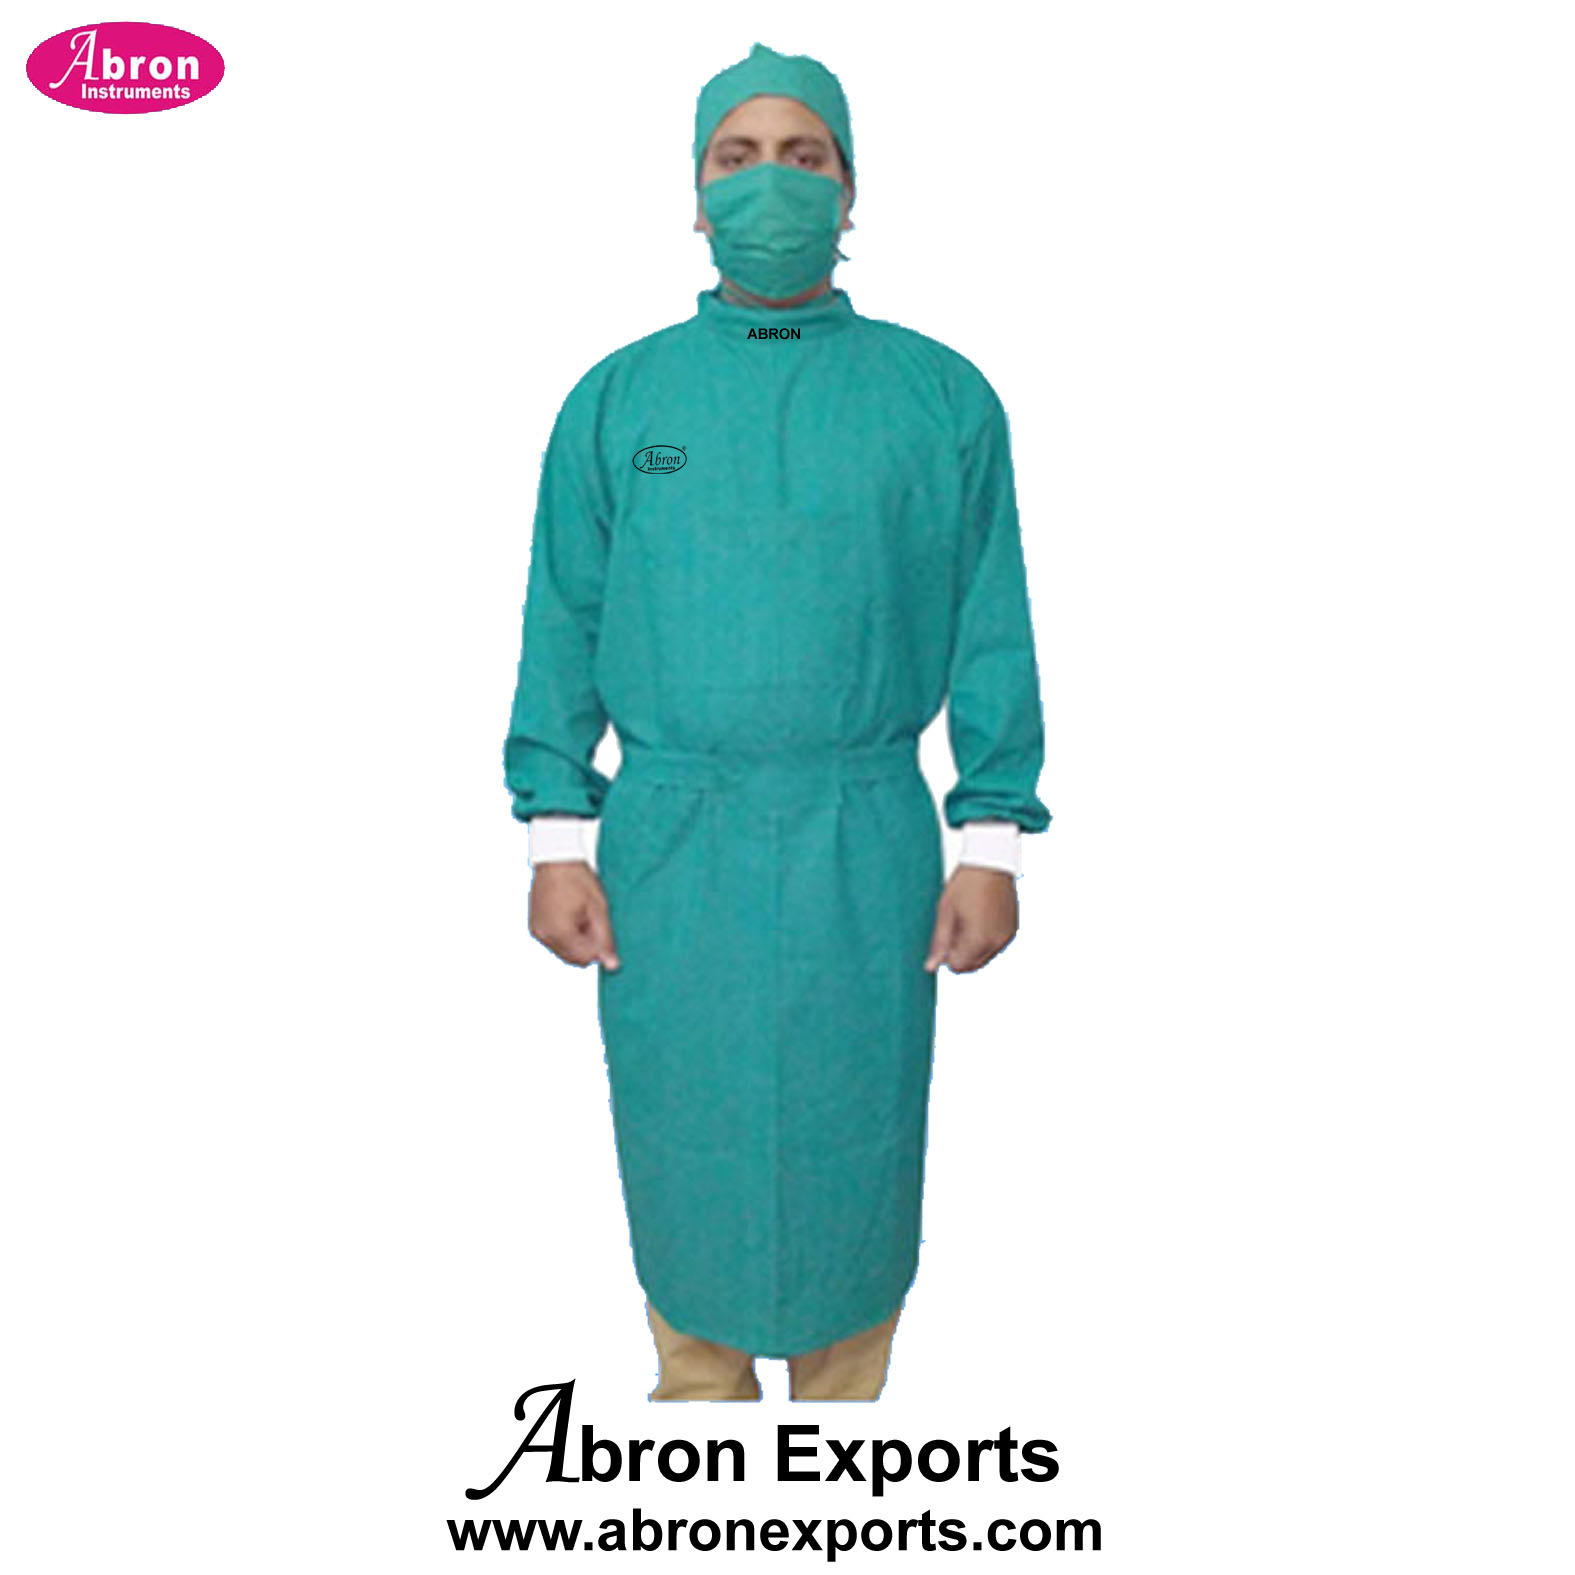 Apron OT Gowns Reusable Cotton Surgeons OT hospital Set with Face Mask Cap Green 10pc Abron9T Clinical gown ABM-2552DC